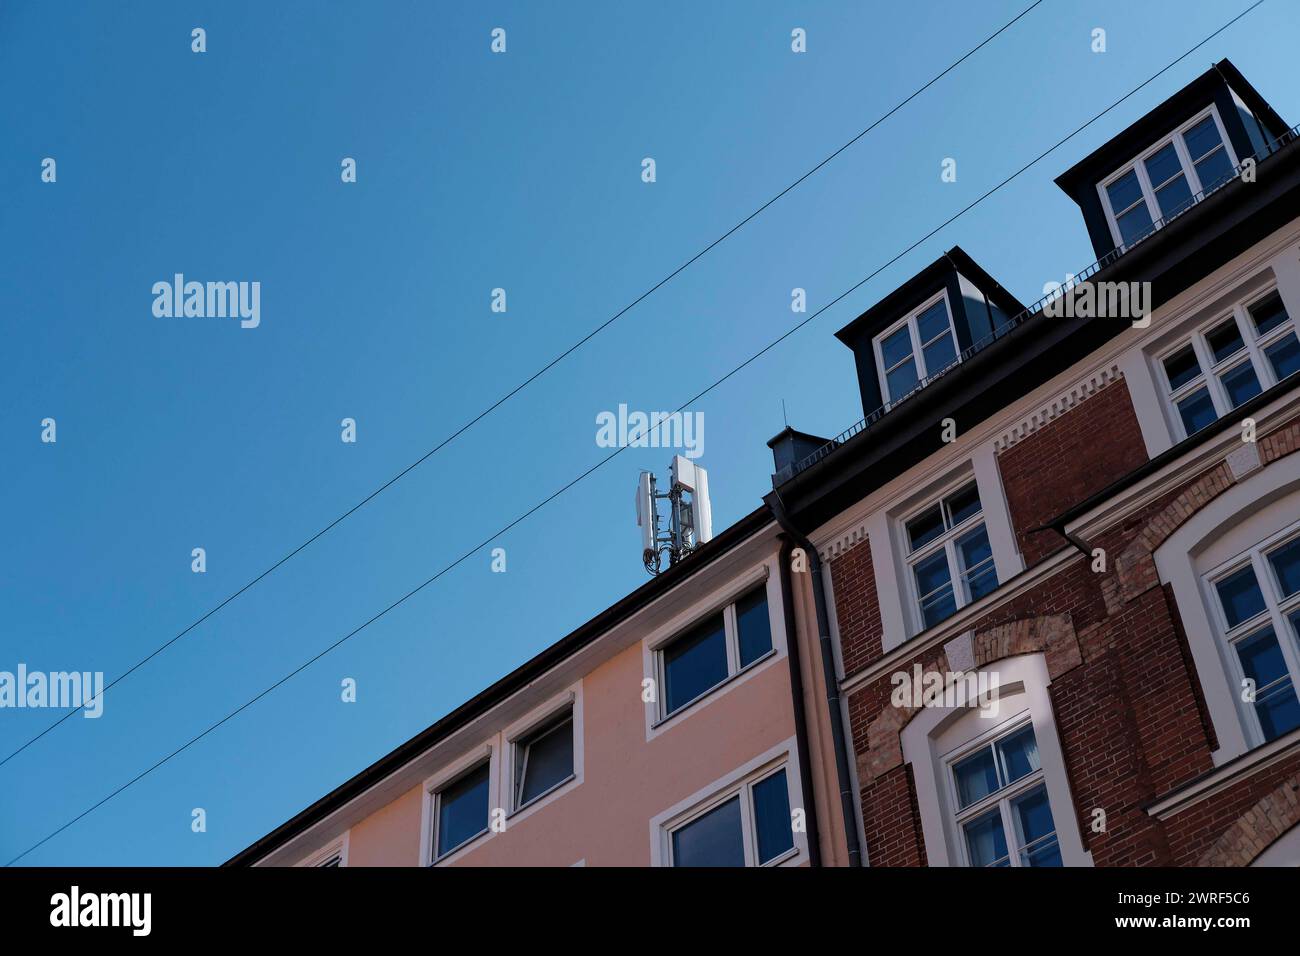 Mobilfunkmast auf Hausdach Mobilfunkmast auf Hausdach a München Maxvorstadt. Bildlich umrahmt von Stromleitungen der hängenden Straßenbeleuchtung Mün Foto Stock